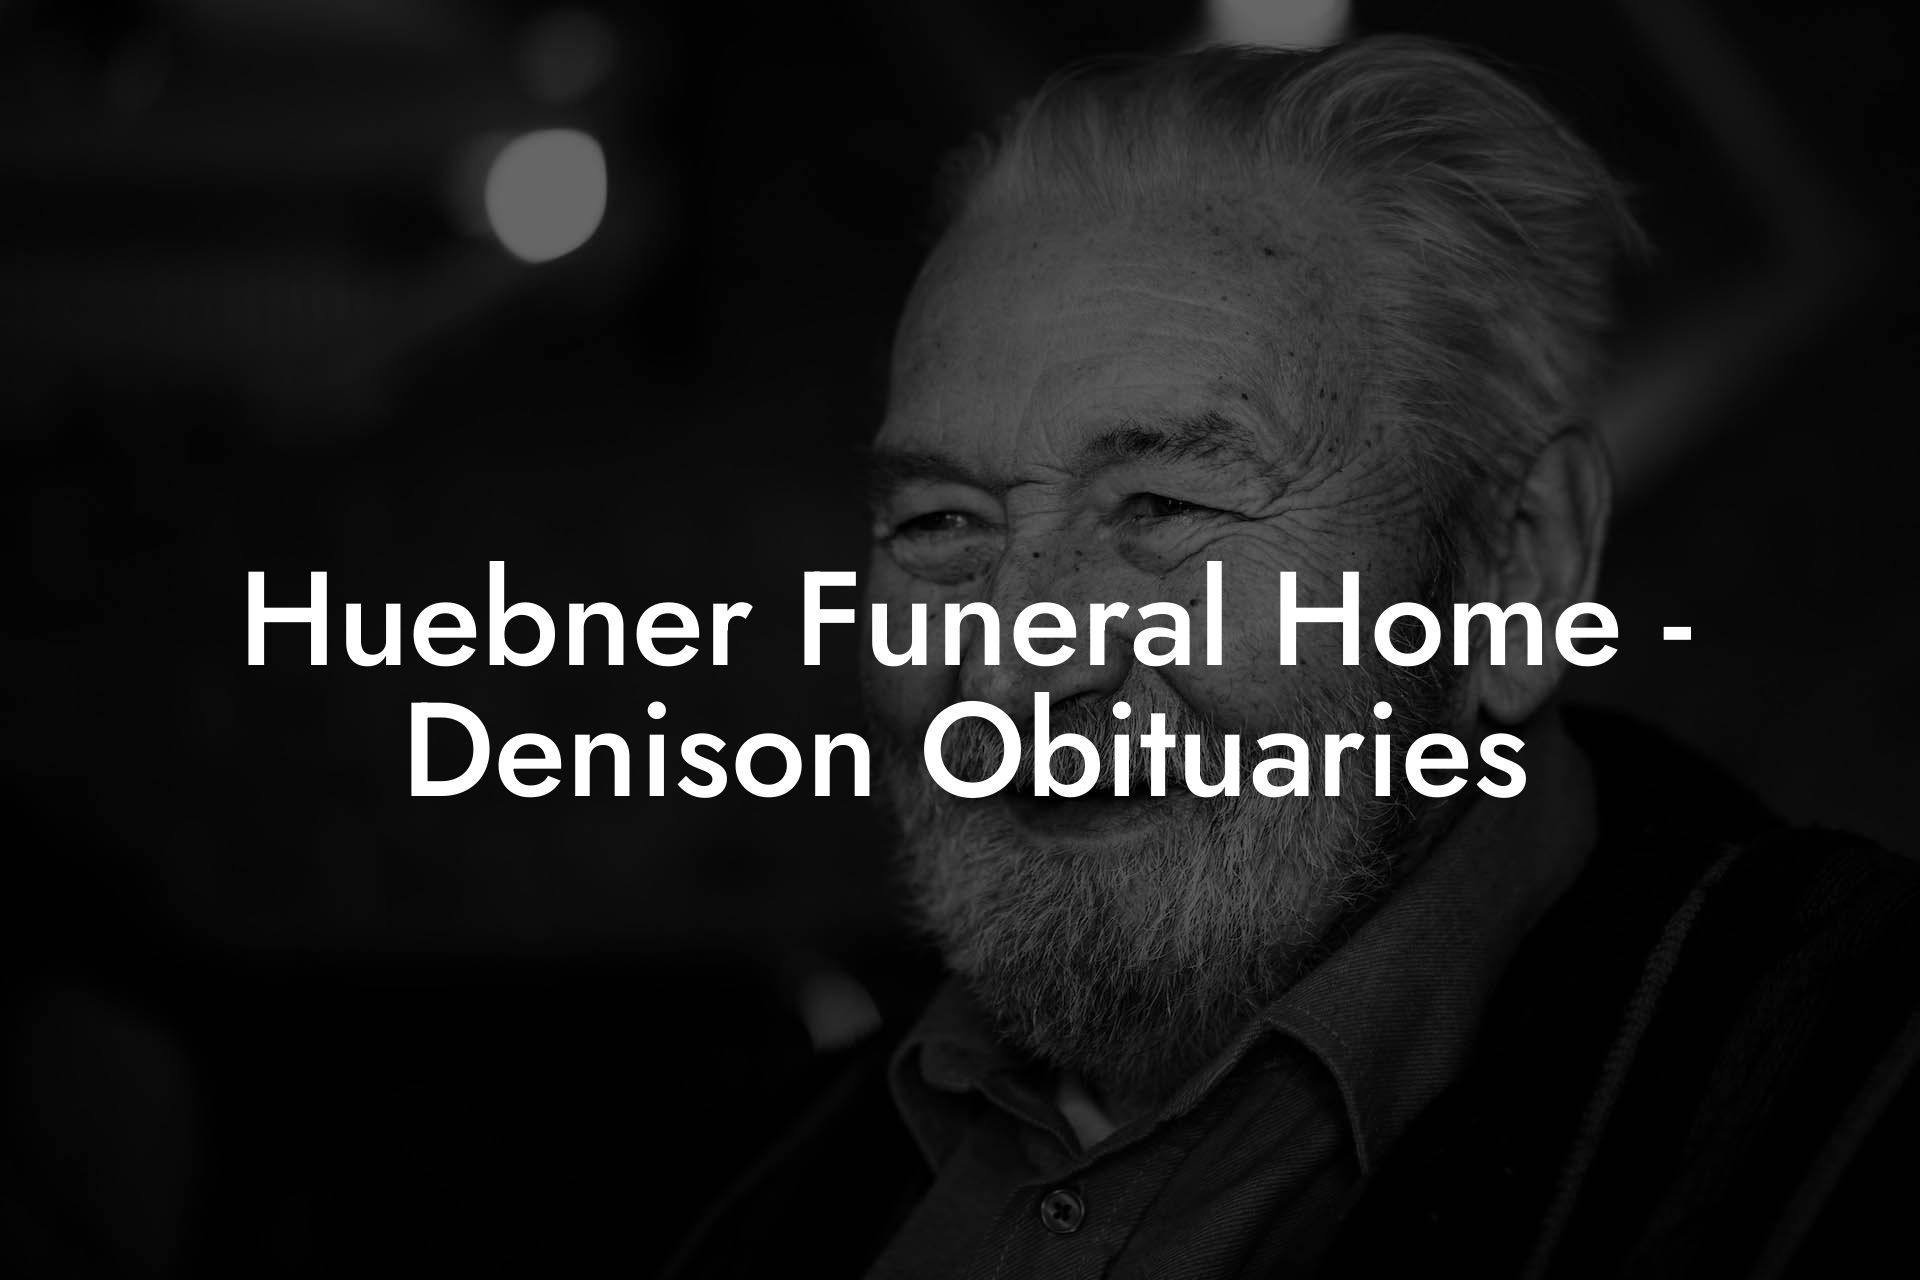 Huebner Funeral Home - Denison Obituaries